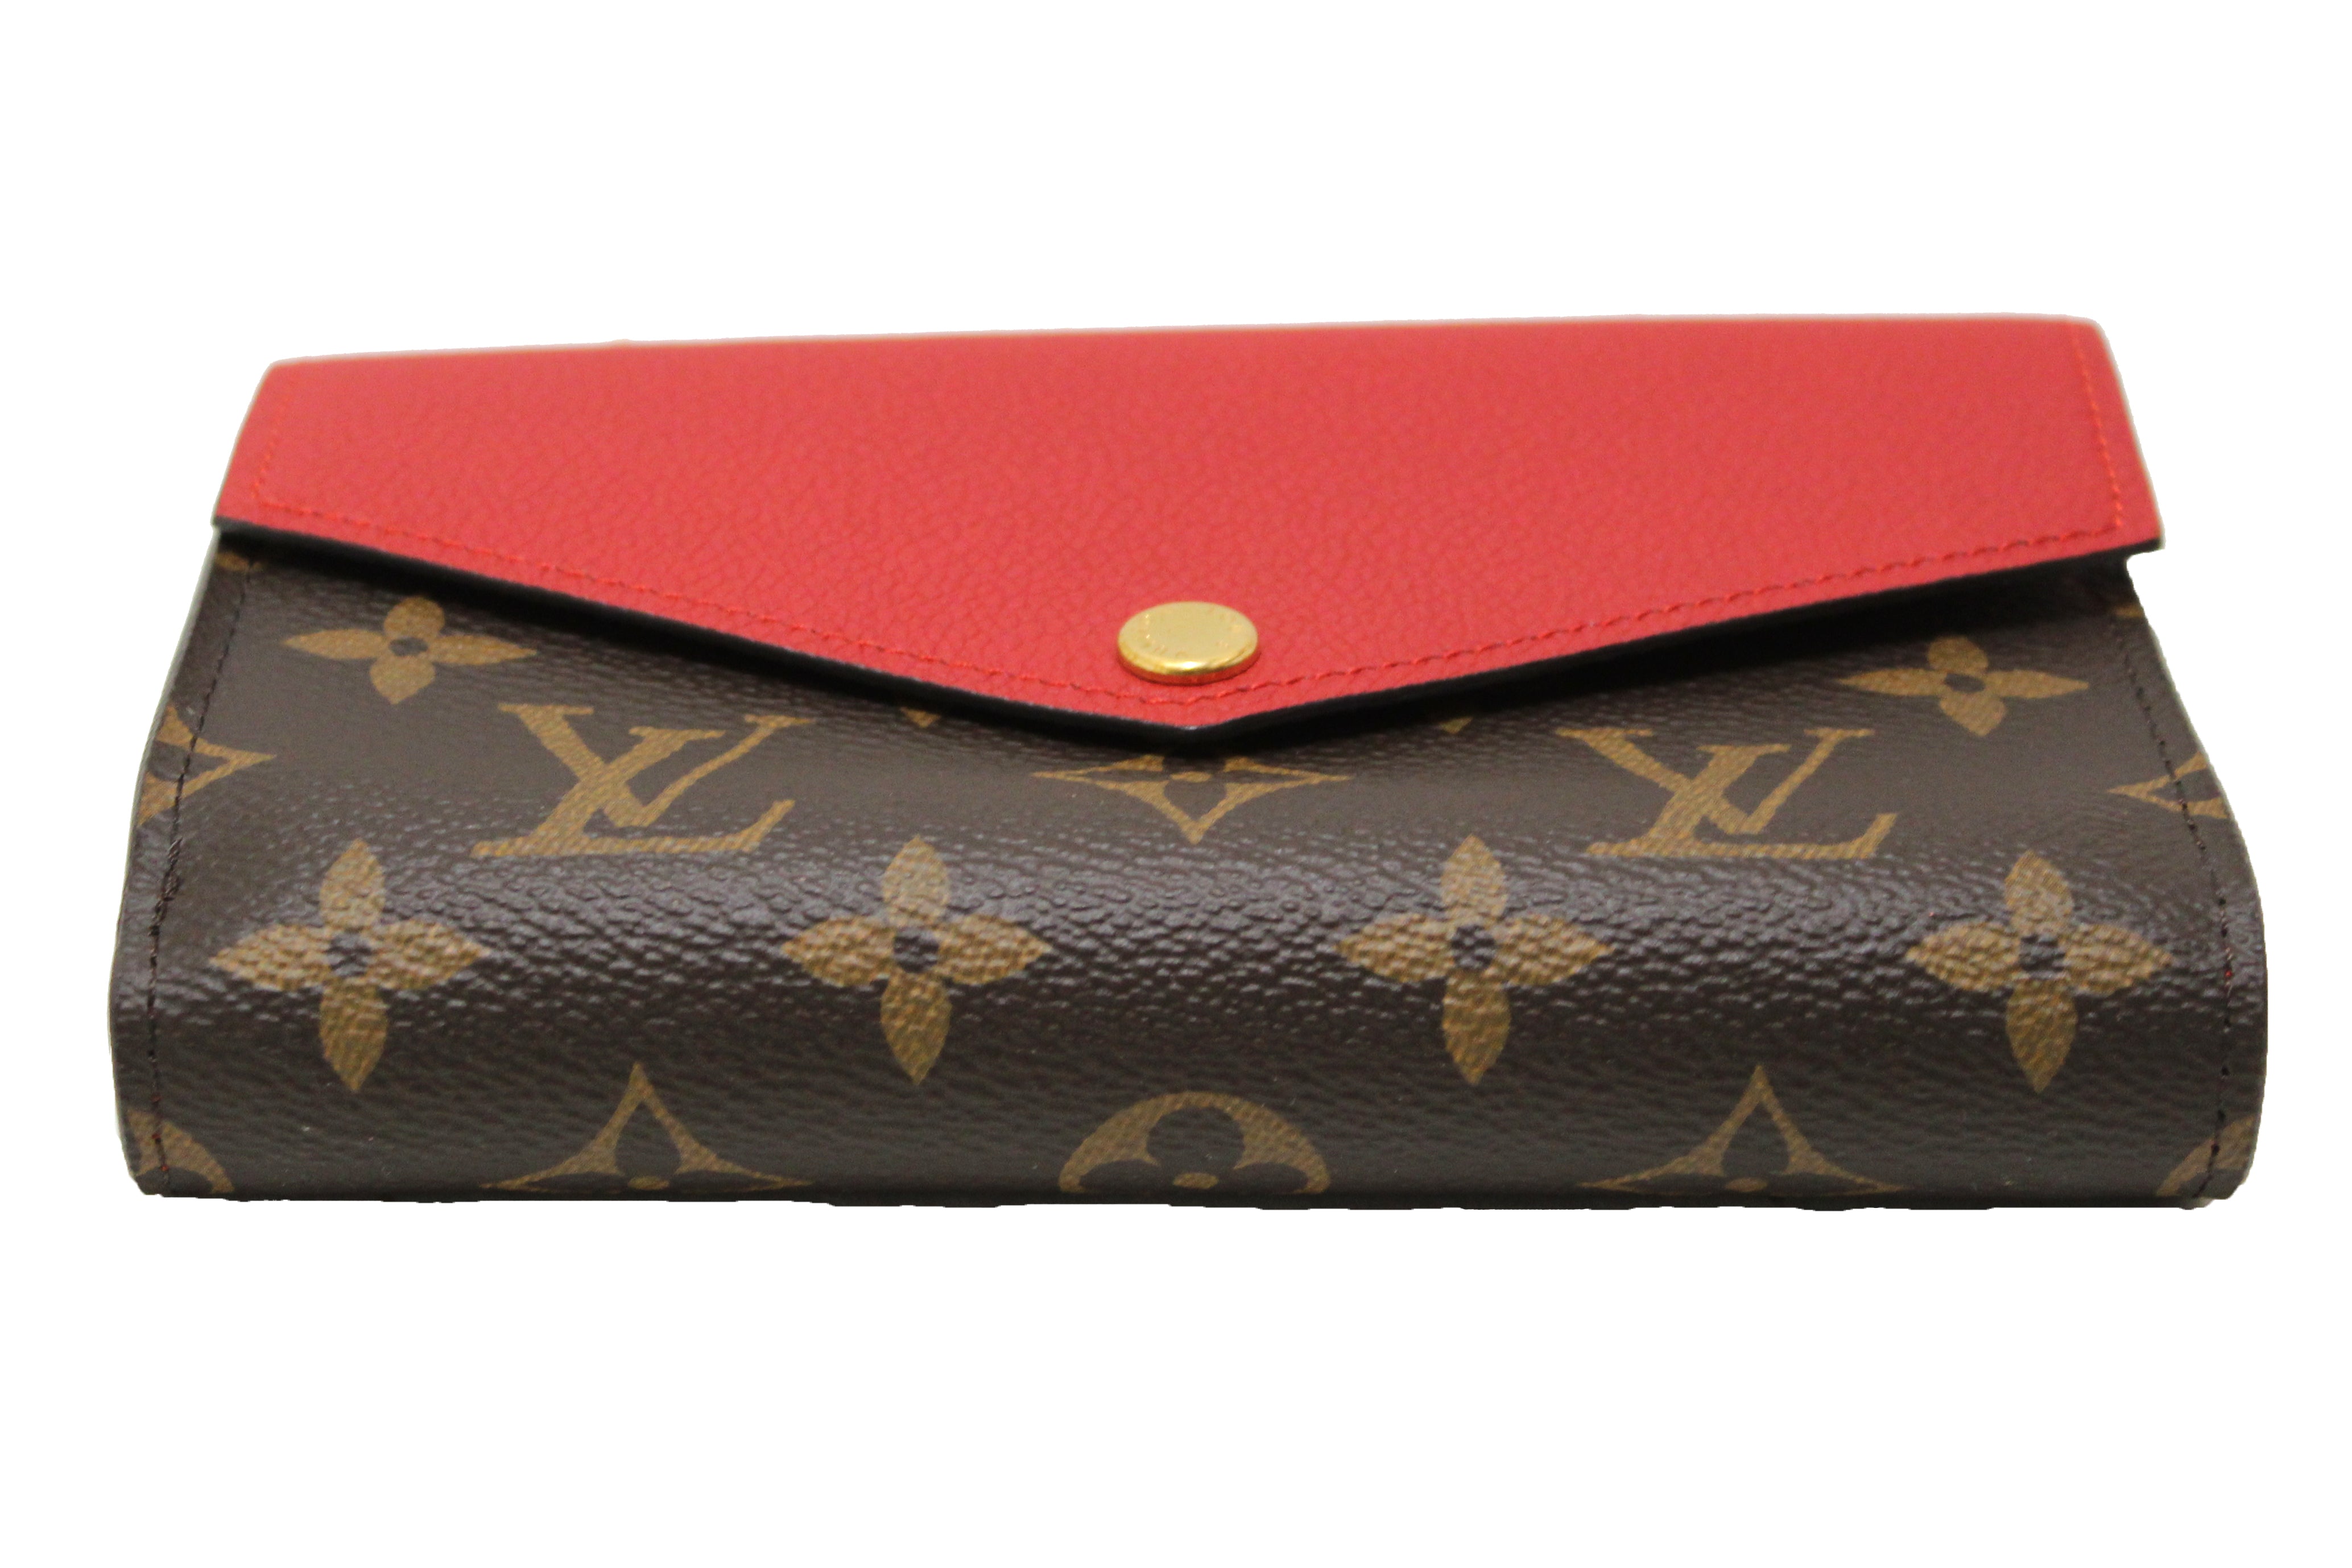 Louis Vuitton Red Monogram Pallas Wallet – The Find